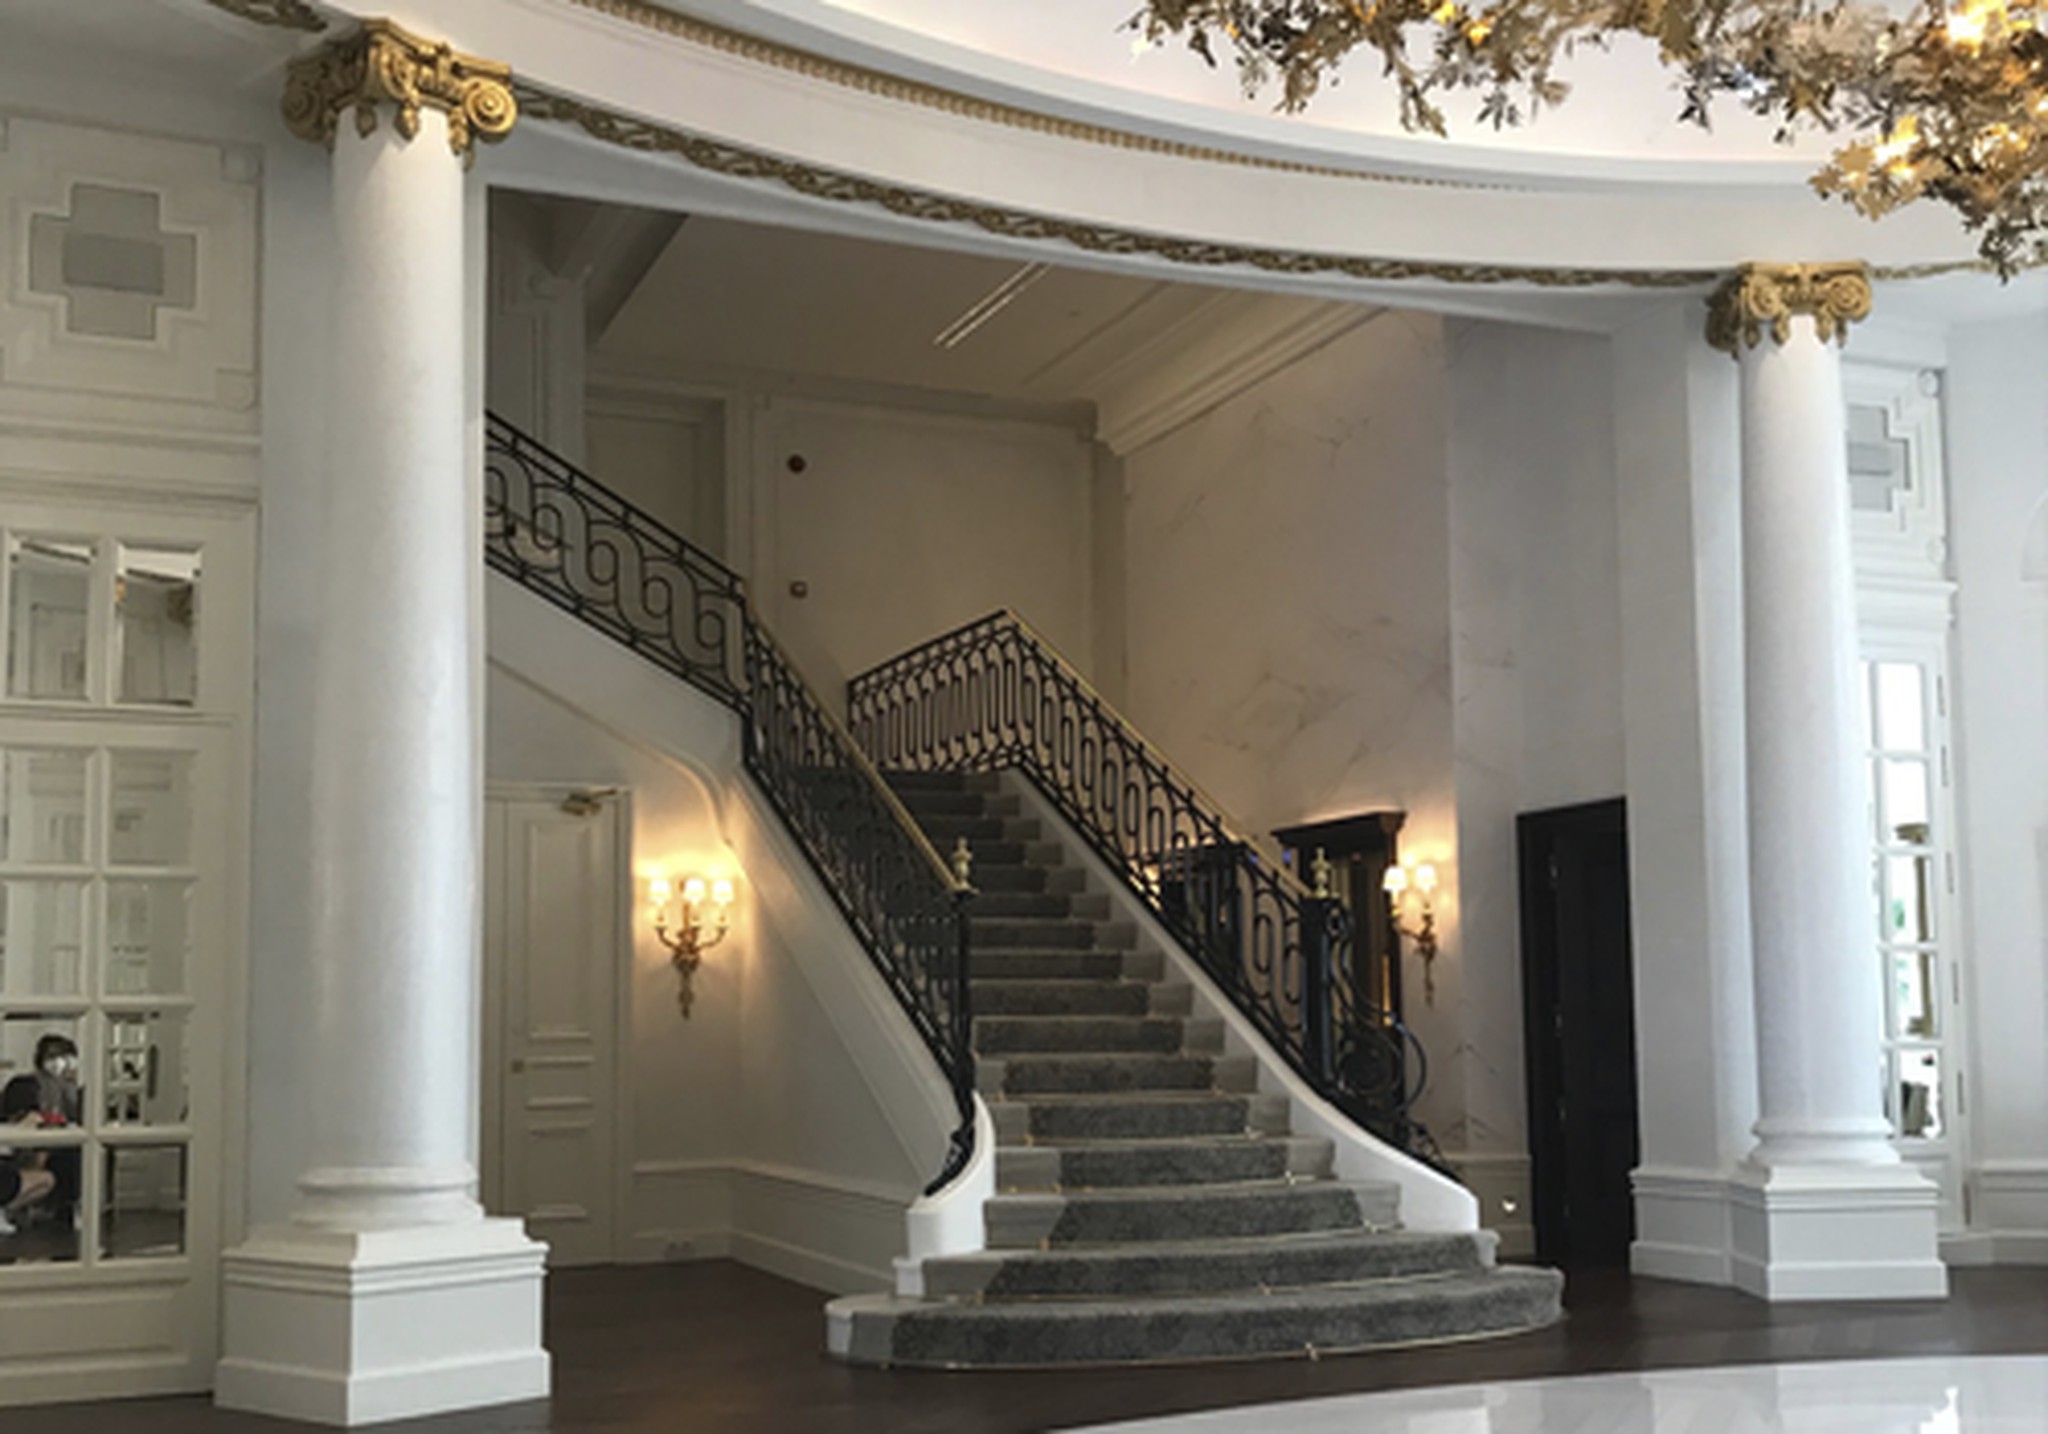 Barandilla de escalera de hotel emblemático restaurada por Bolibar